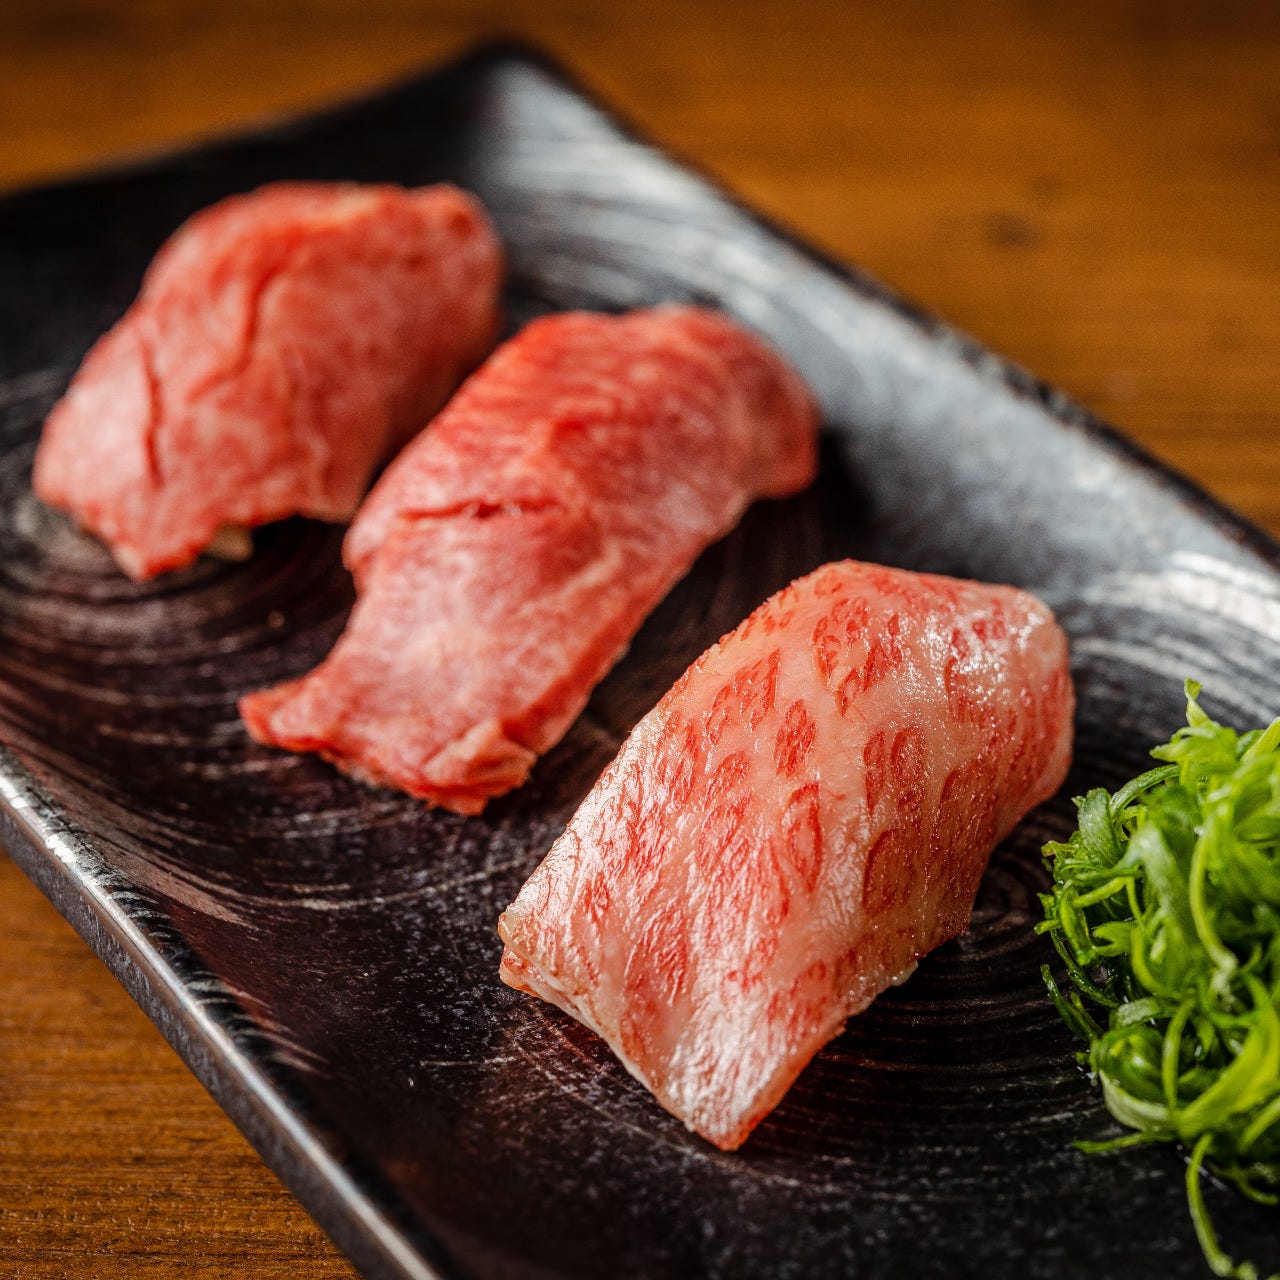 肉の寿司 一縁 研究学園店